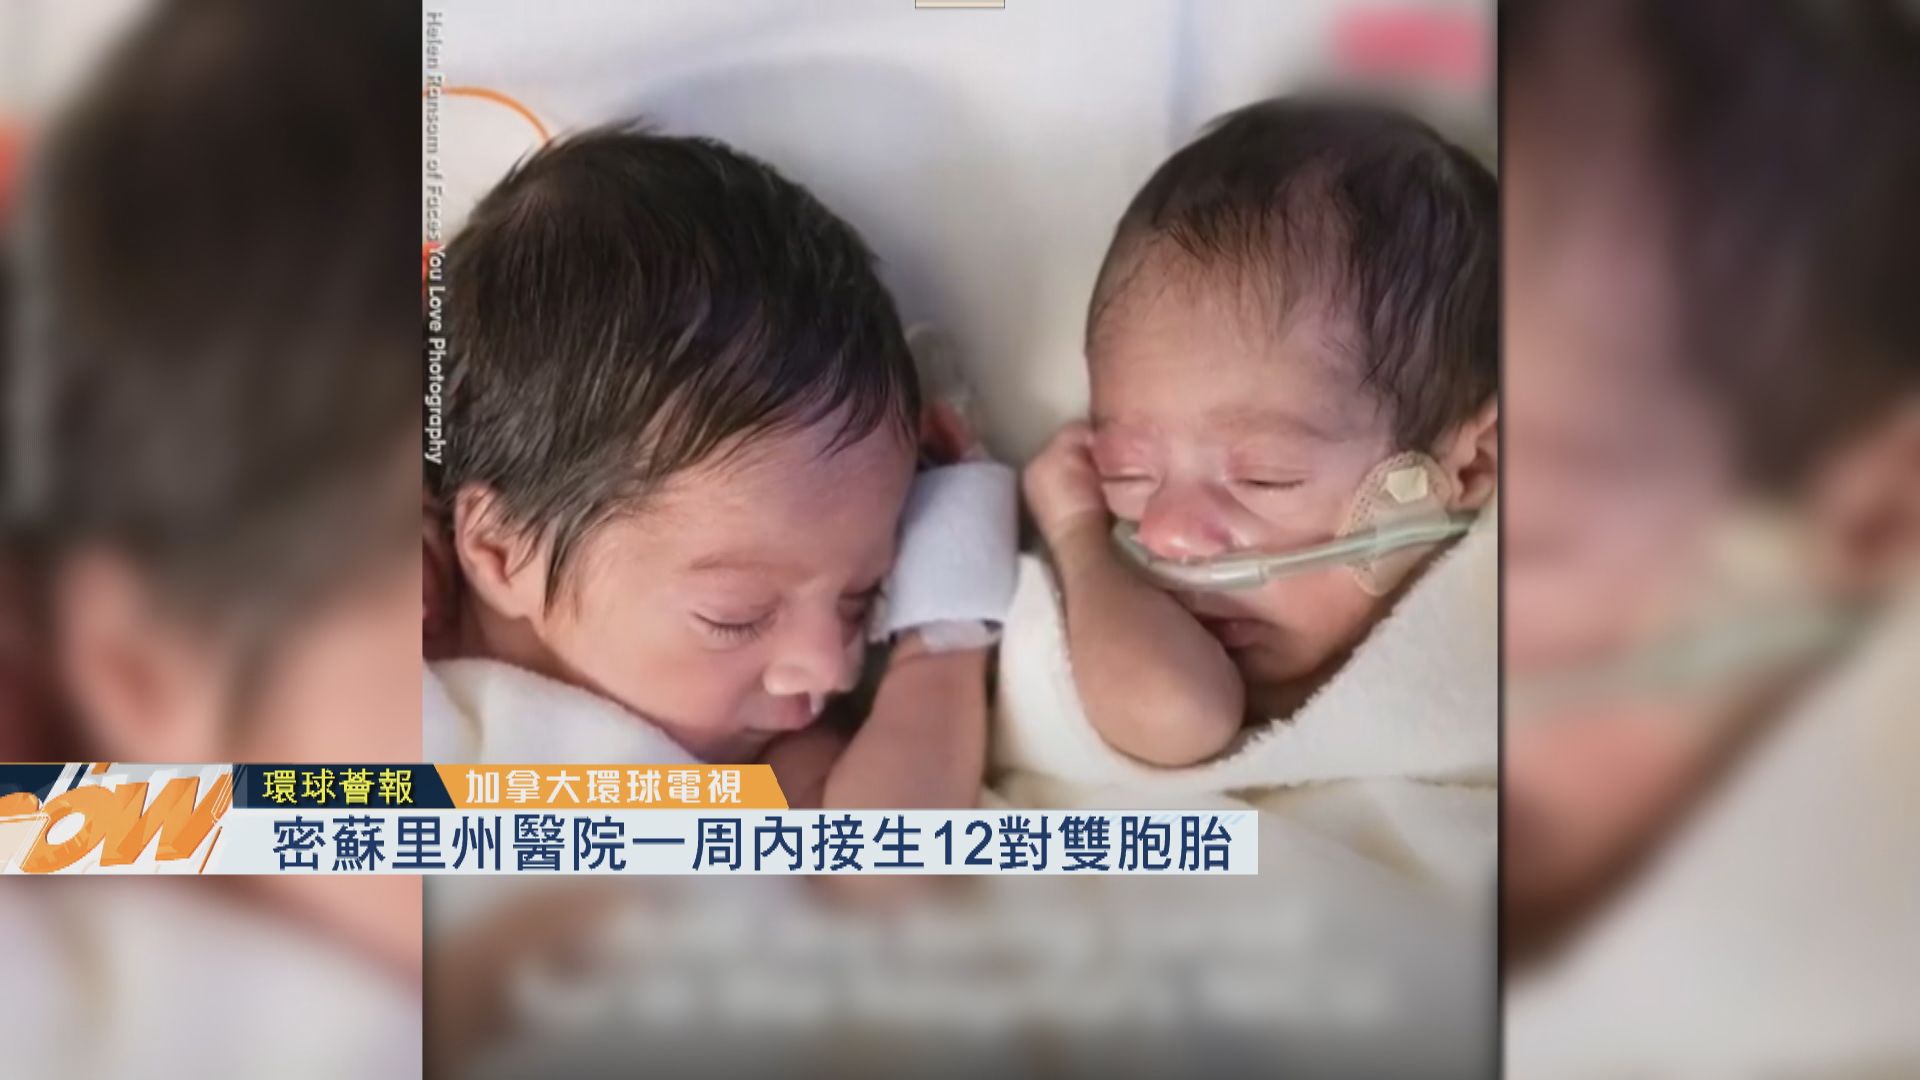 【環球薈報】美醫院一周內接生12對雙胞胎